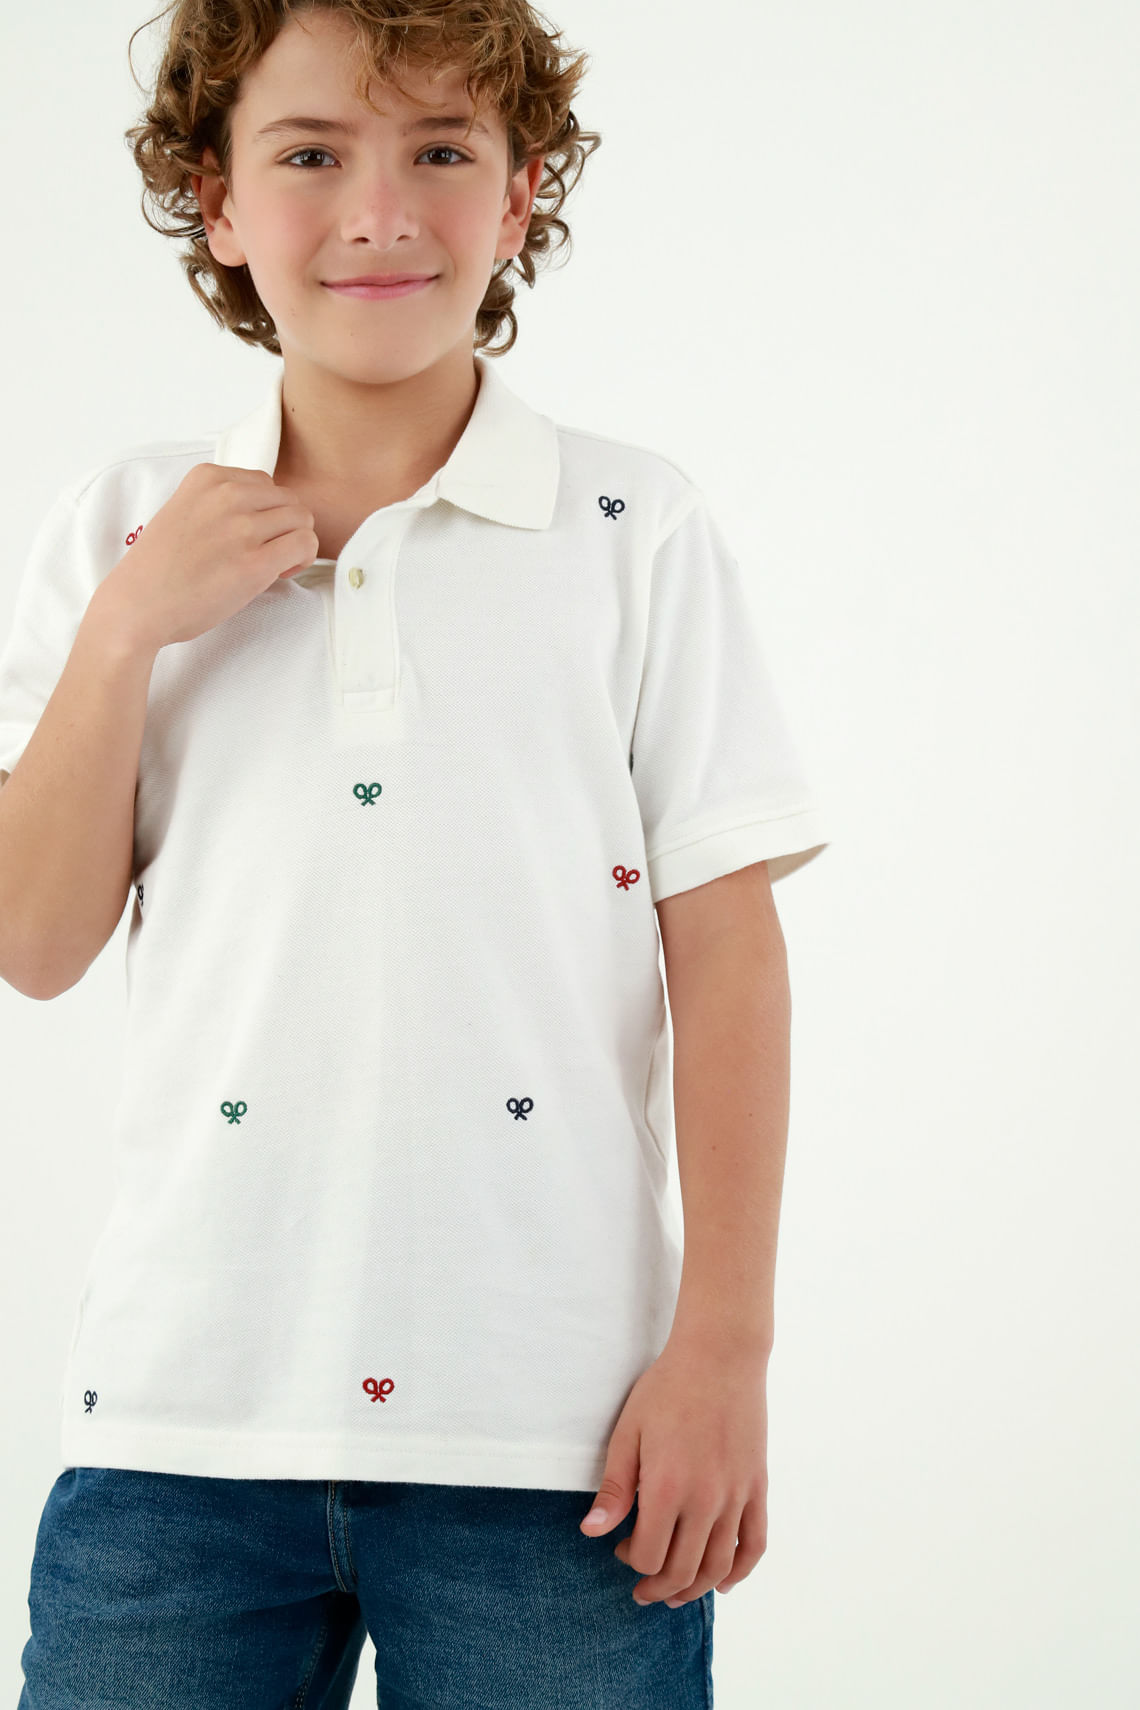 Camisas Polo para Niños | Colores y Estampadas | Tennis - Tennis | Tienda  de Ropa Online en Colombia